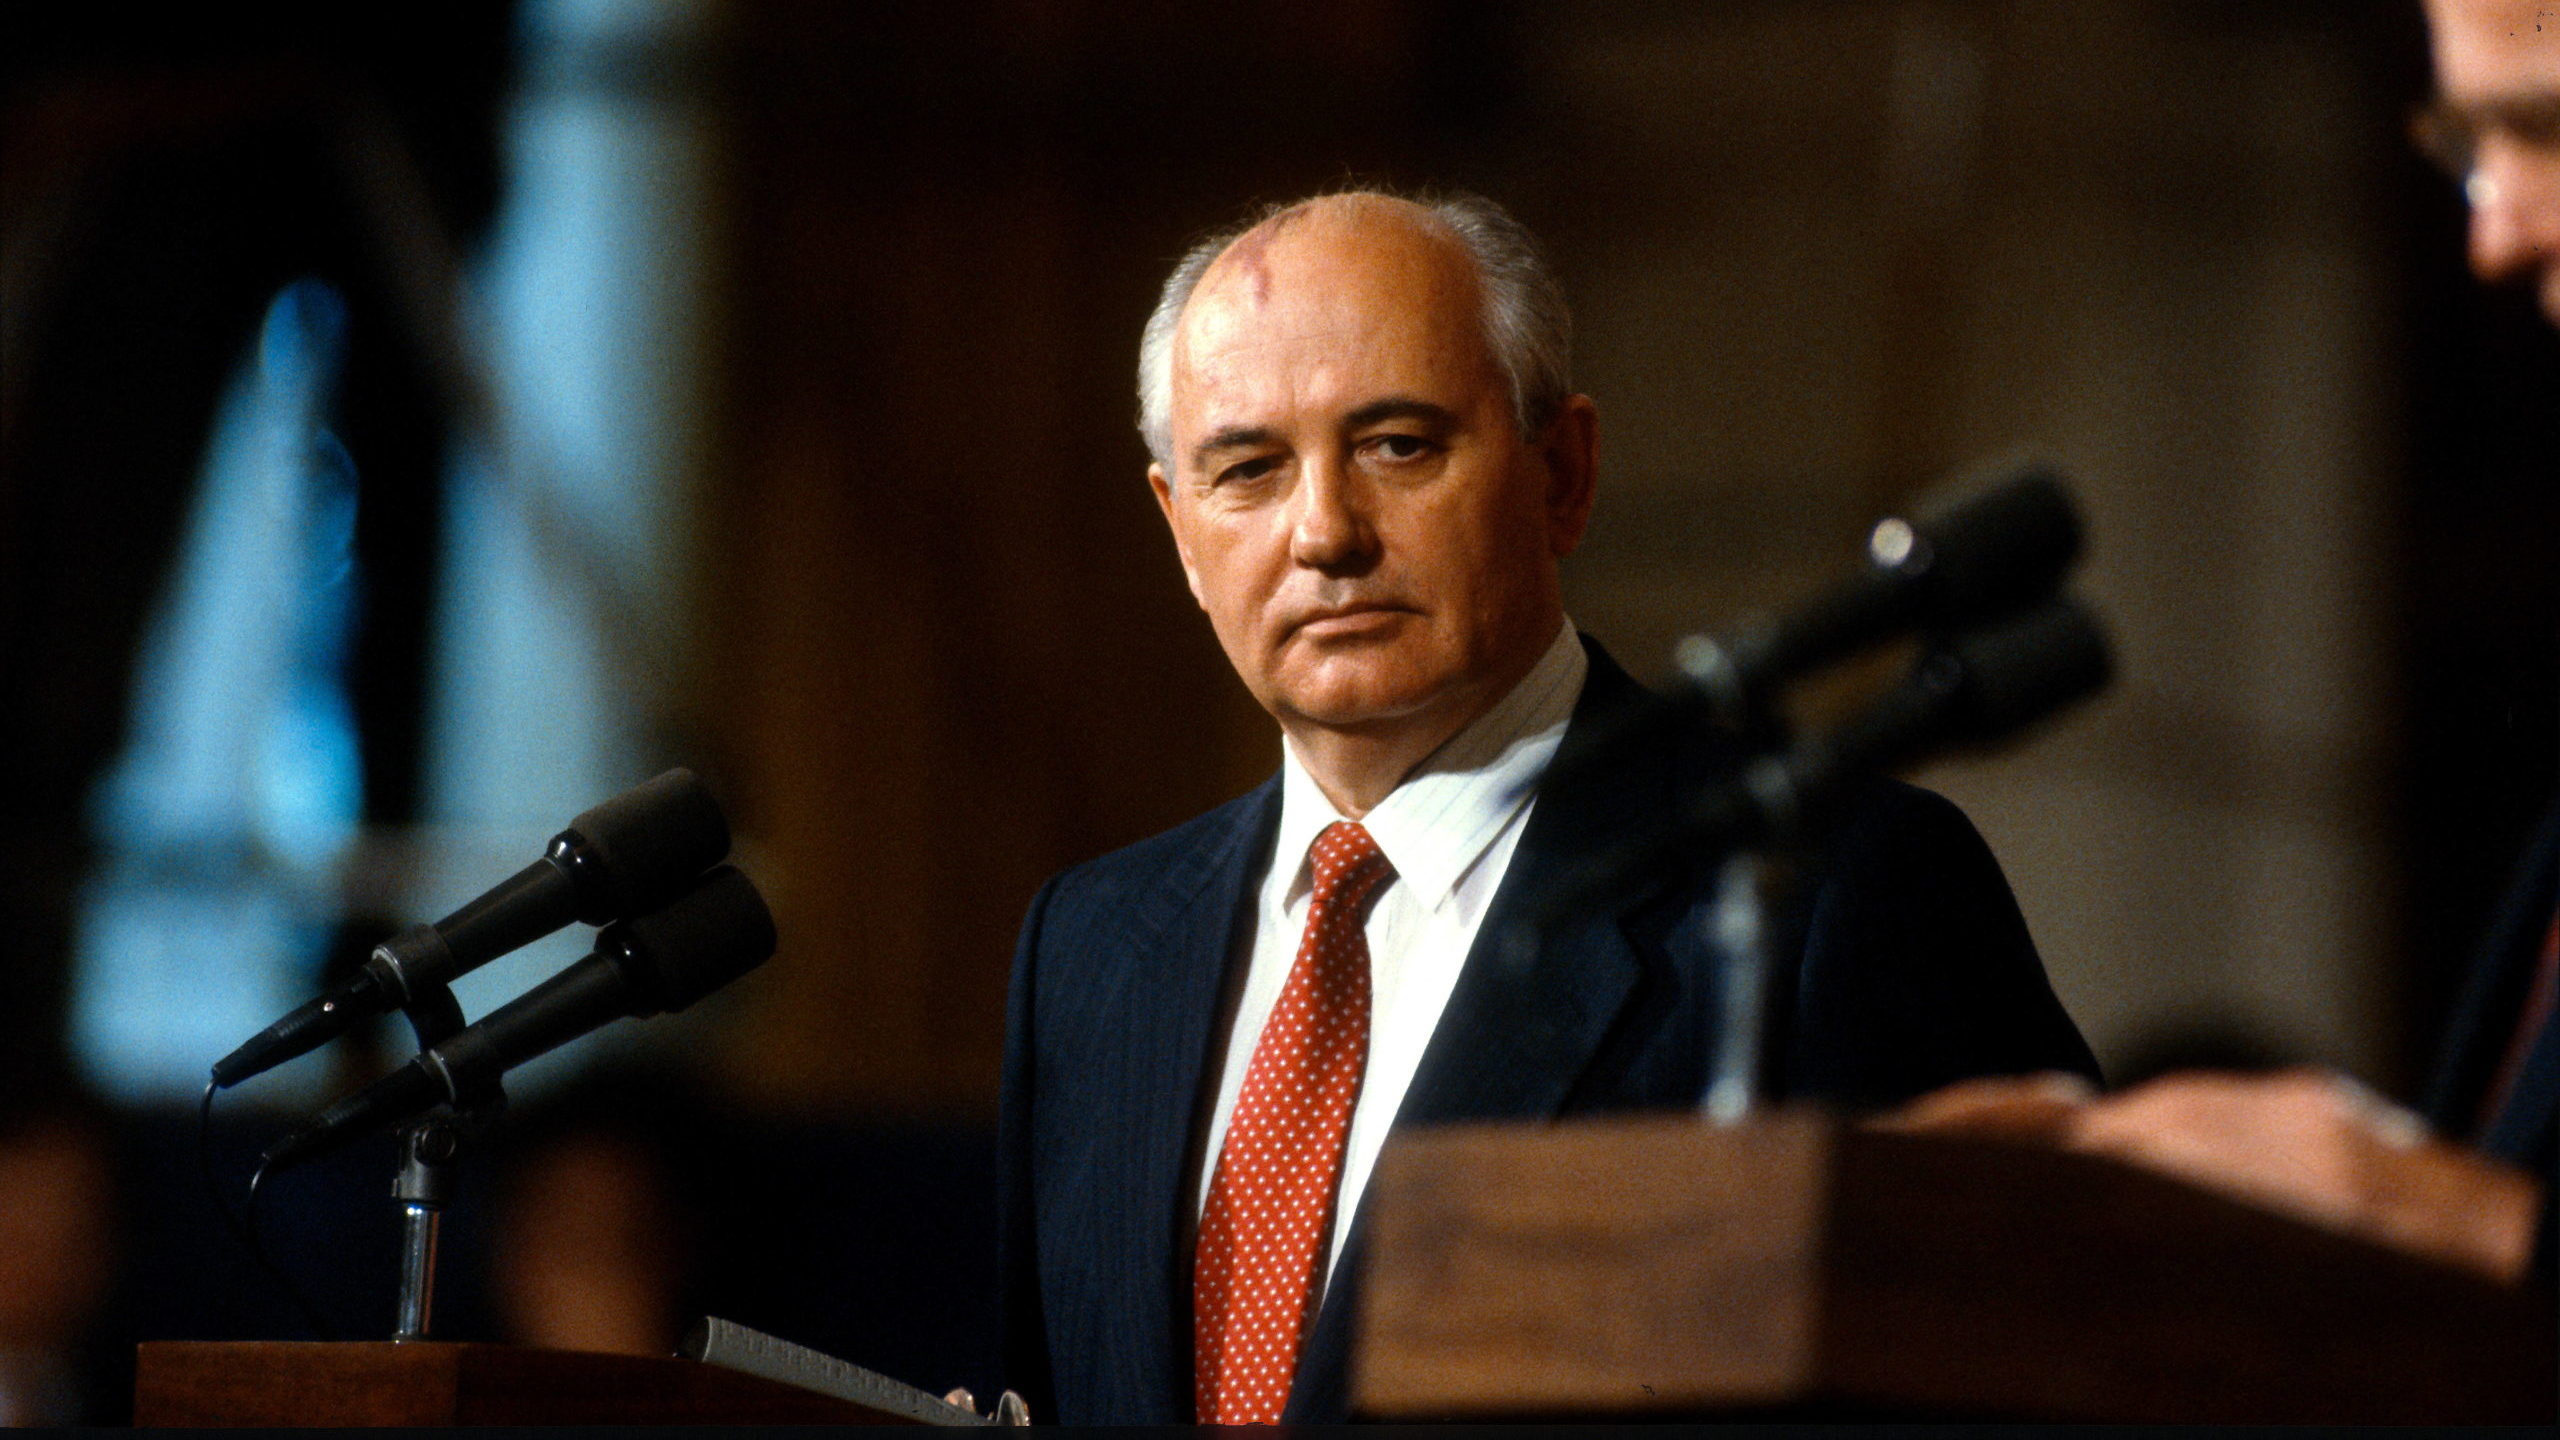 Muere Mijail Gorbachov, el último líder soviético y figura clave en el fin de la Guerra Fria